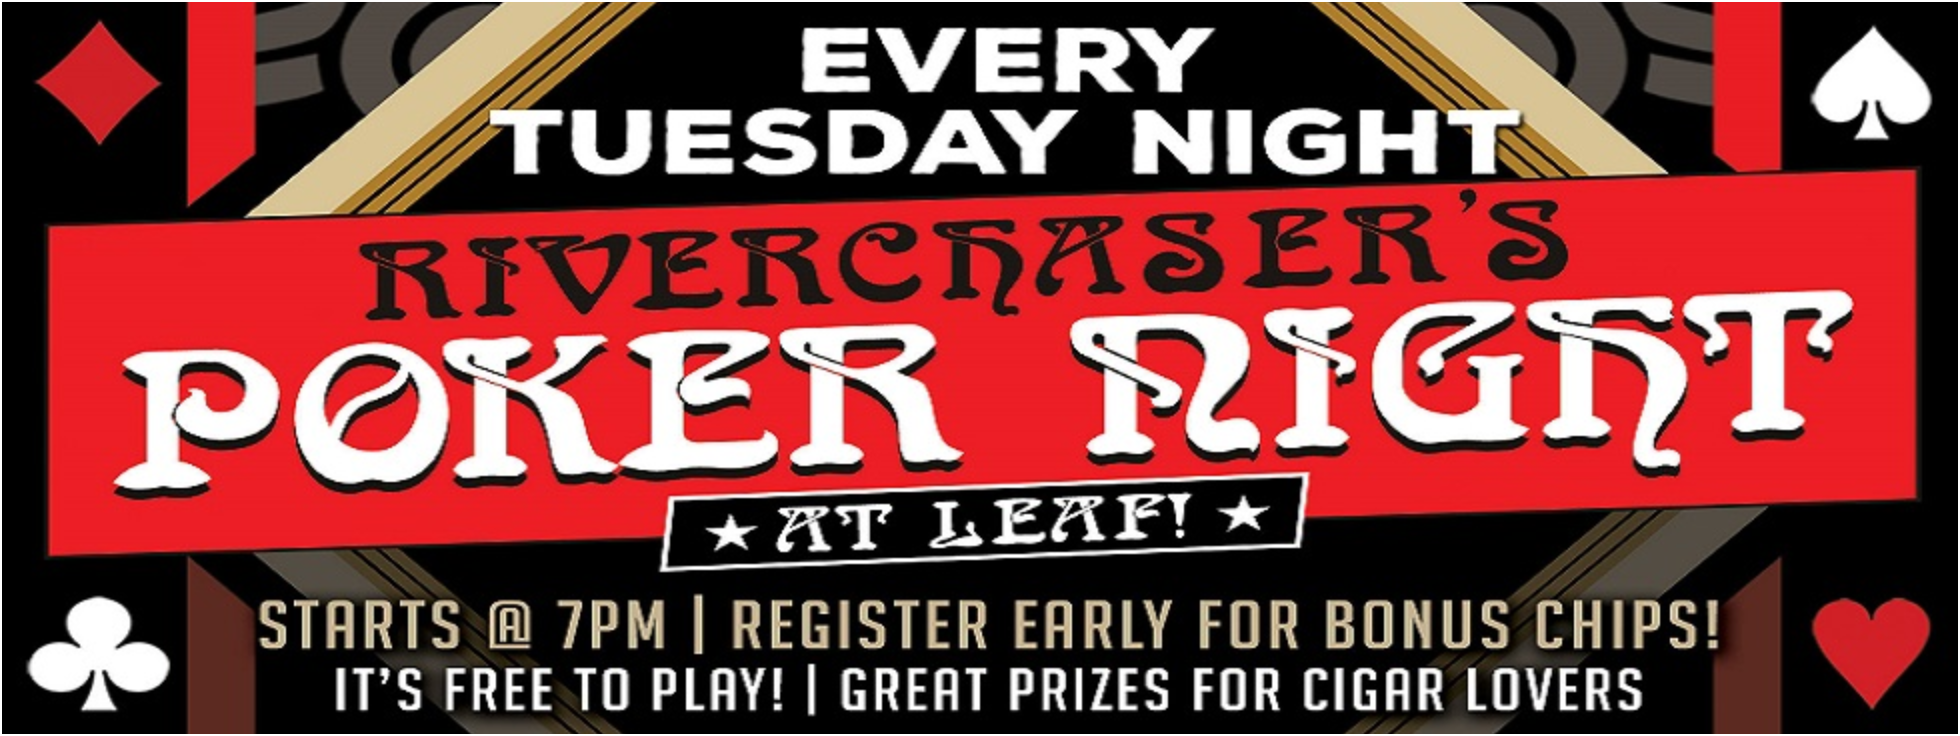 Lear Cigar Bar Event Riverchaser's Poker